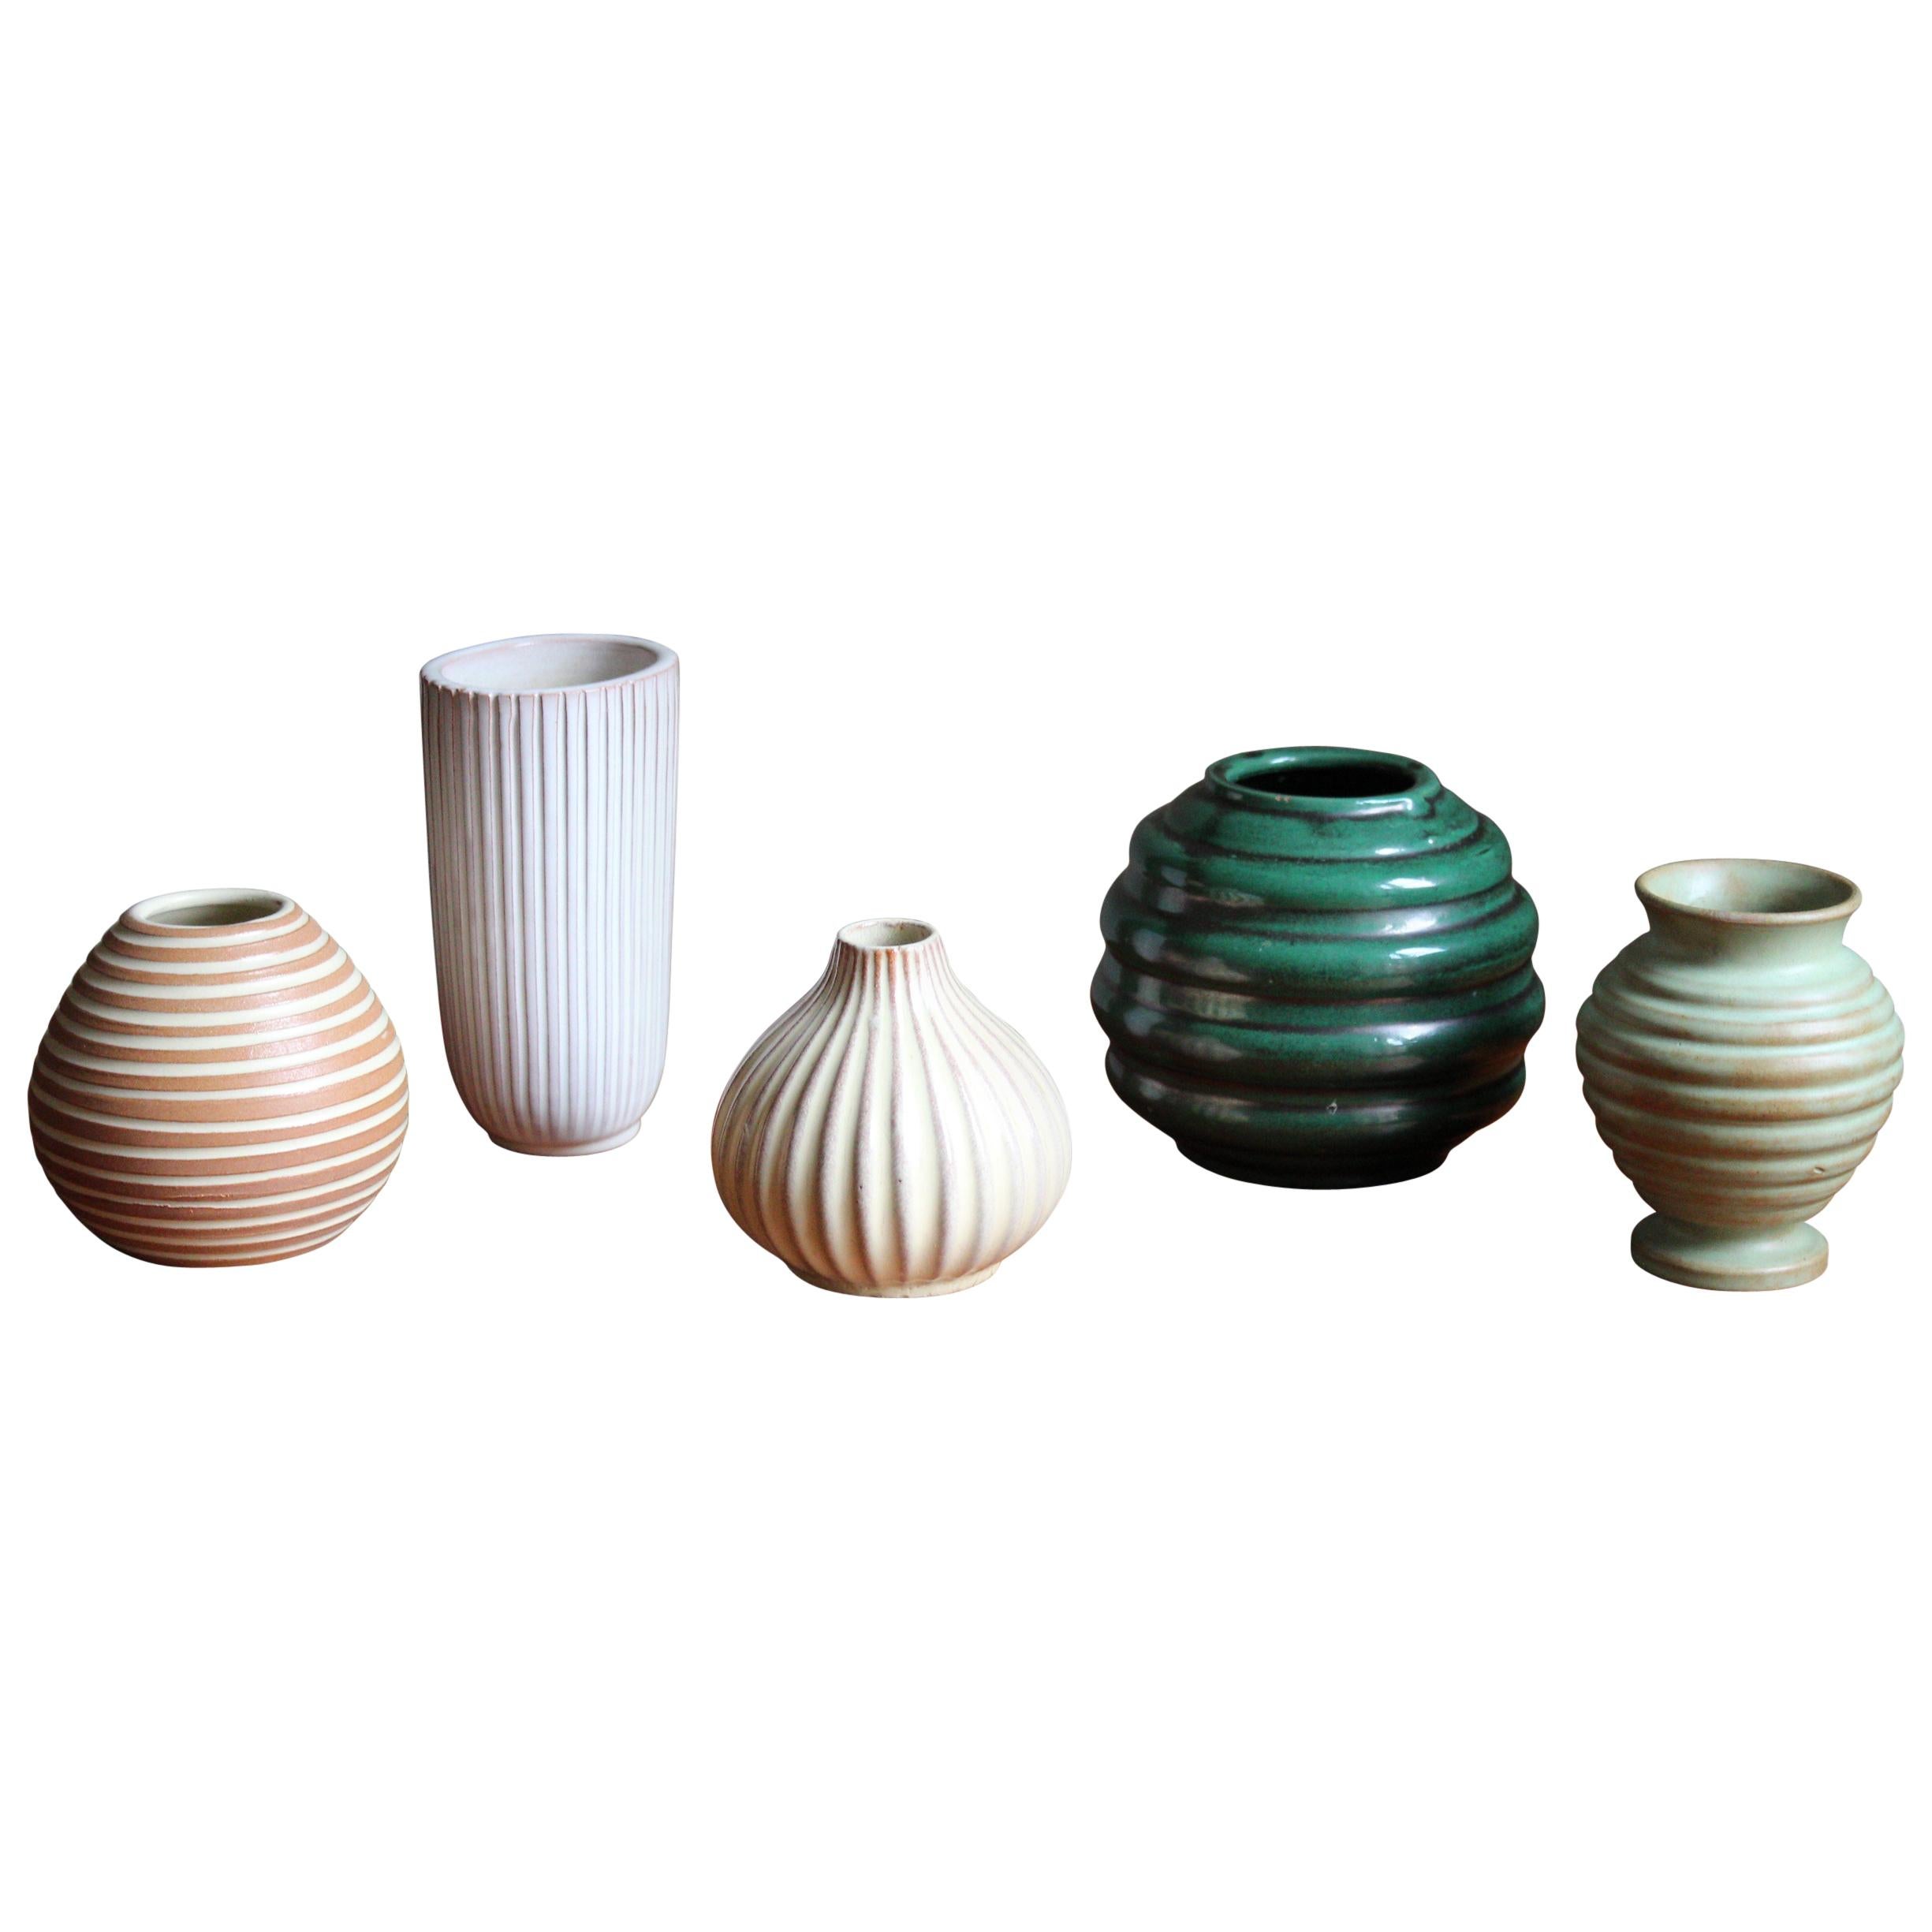 Upsala-Ekeby, Collection of Vases, Glazed Stoneware, Sweden, 1930s